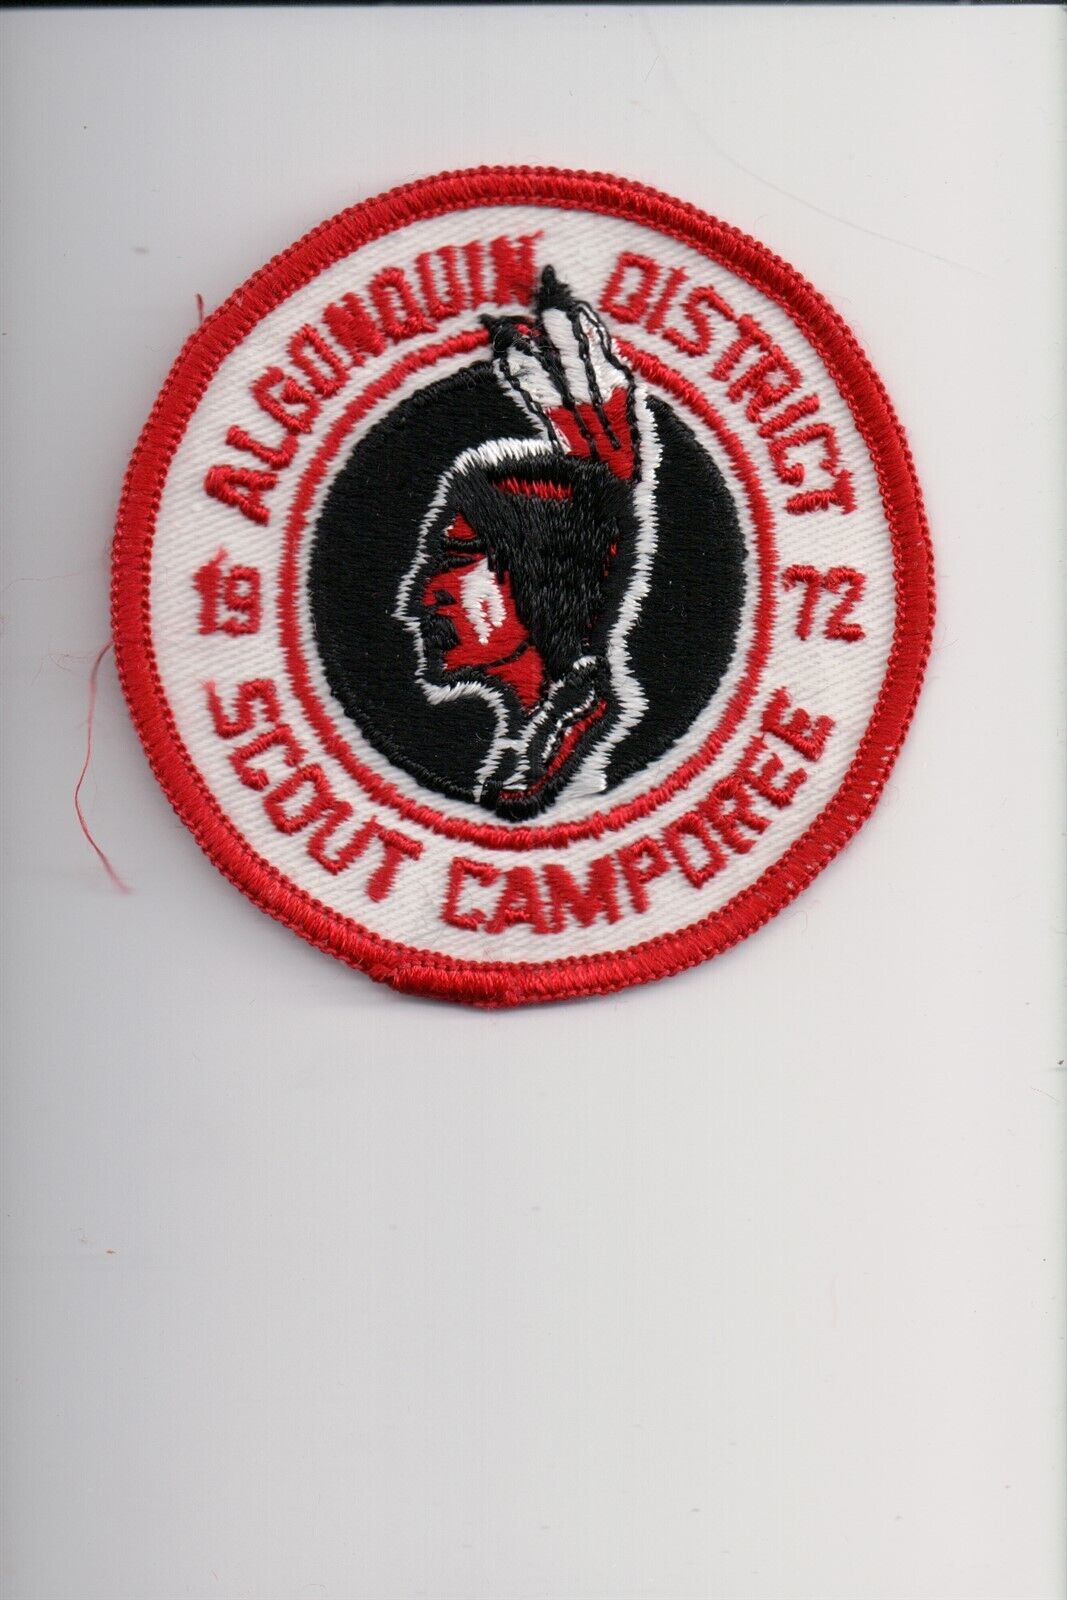 1972 Algonquin District Scout Camporee patch